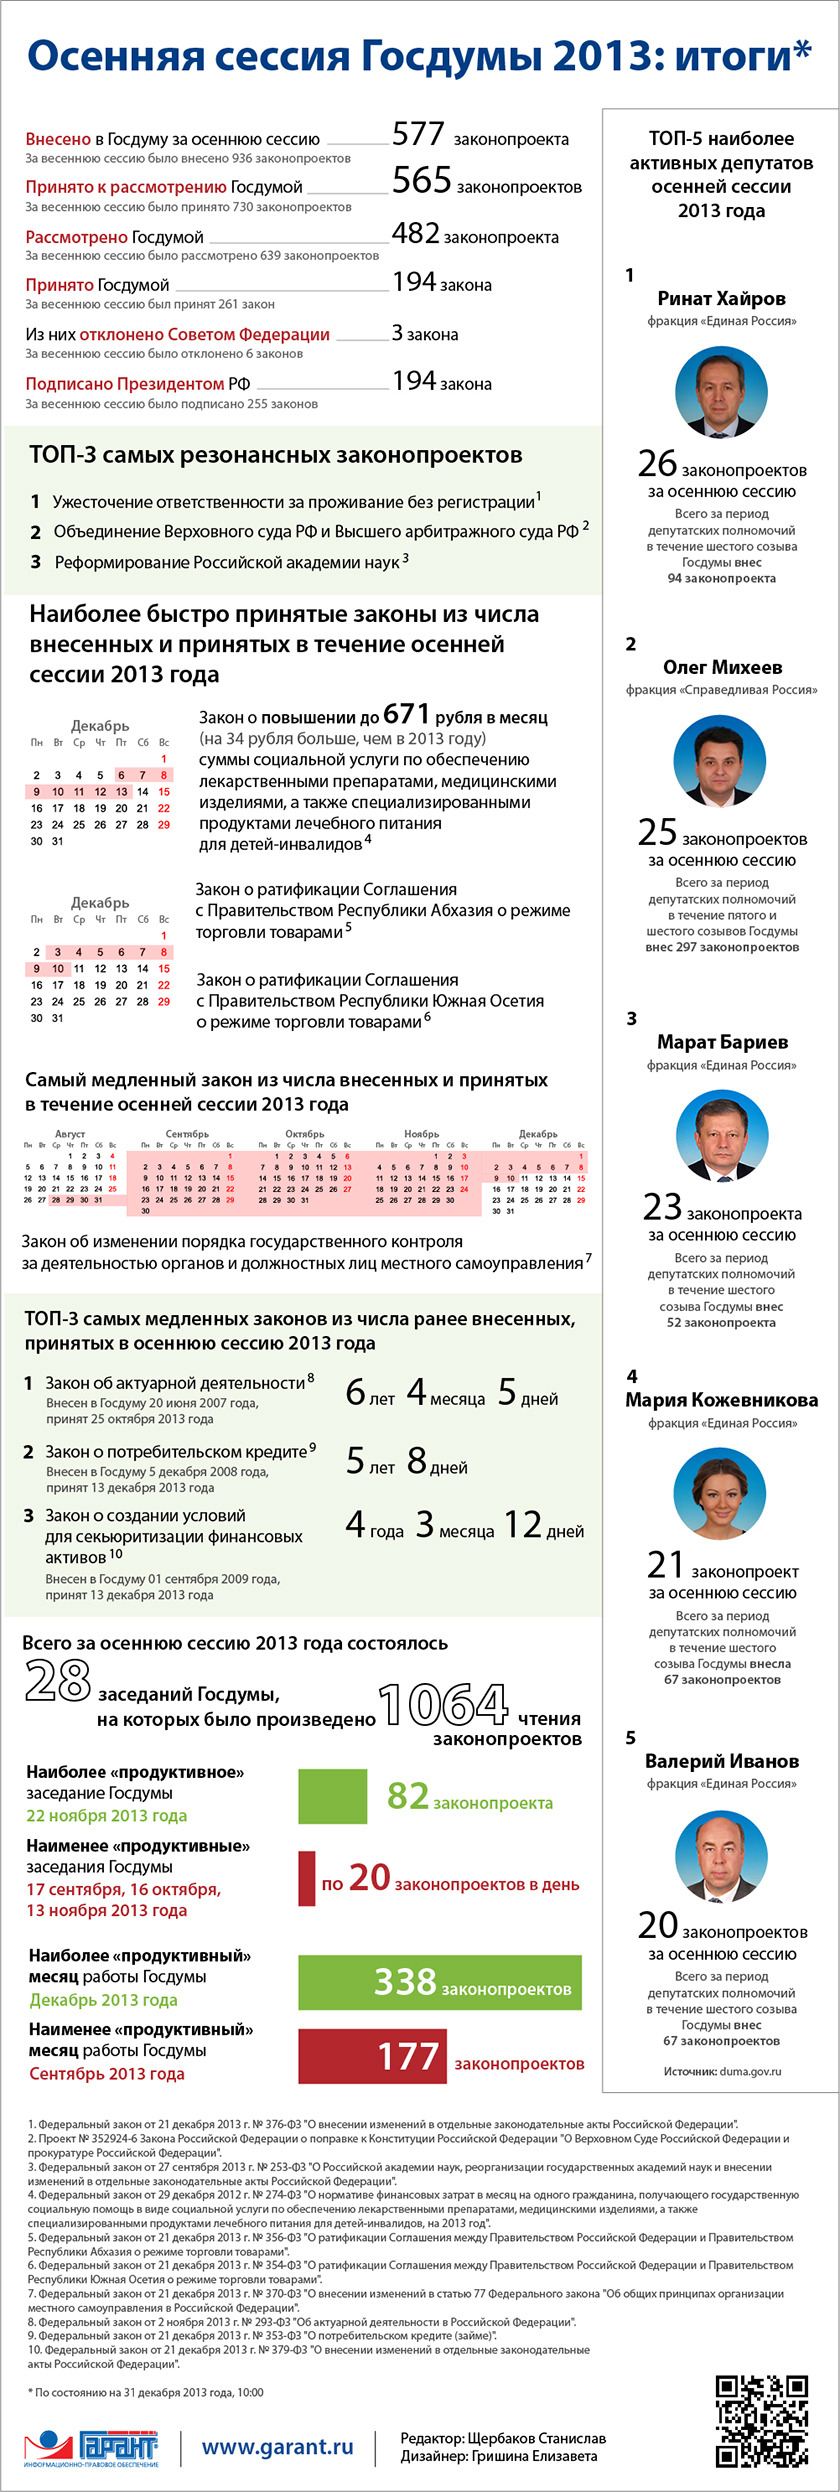 Осенняя сессия Госдумы 2013: итоги